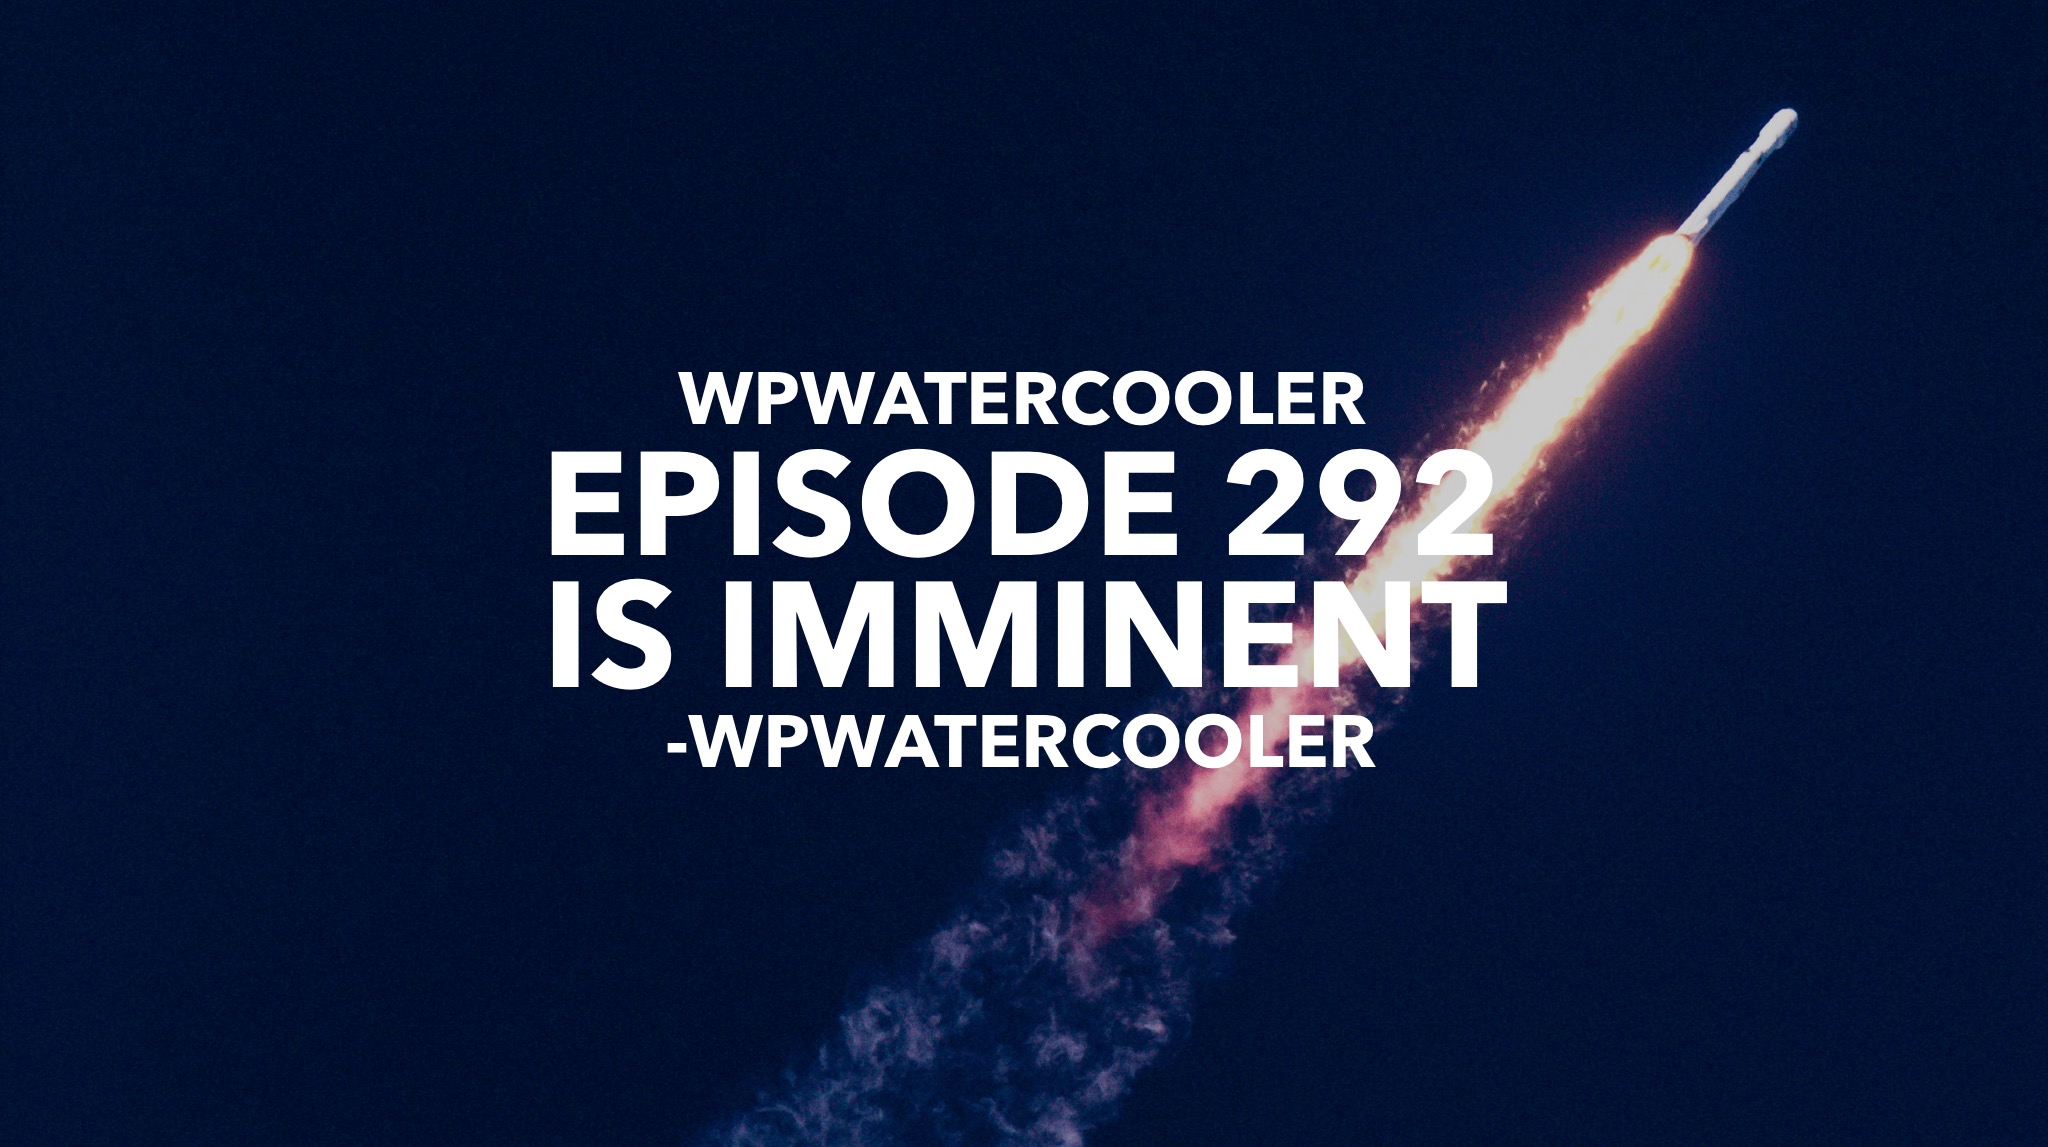 EP292 - WPwatercooler episode 292 is imminent